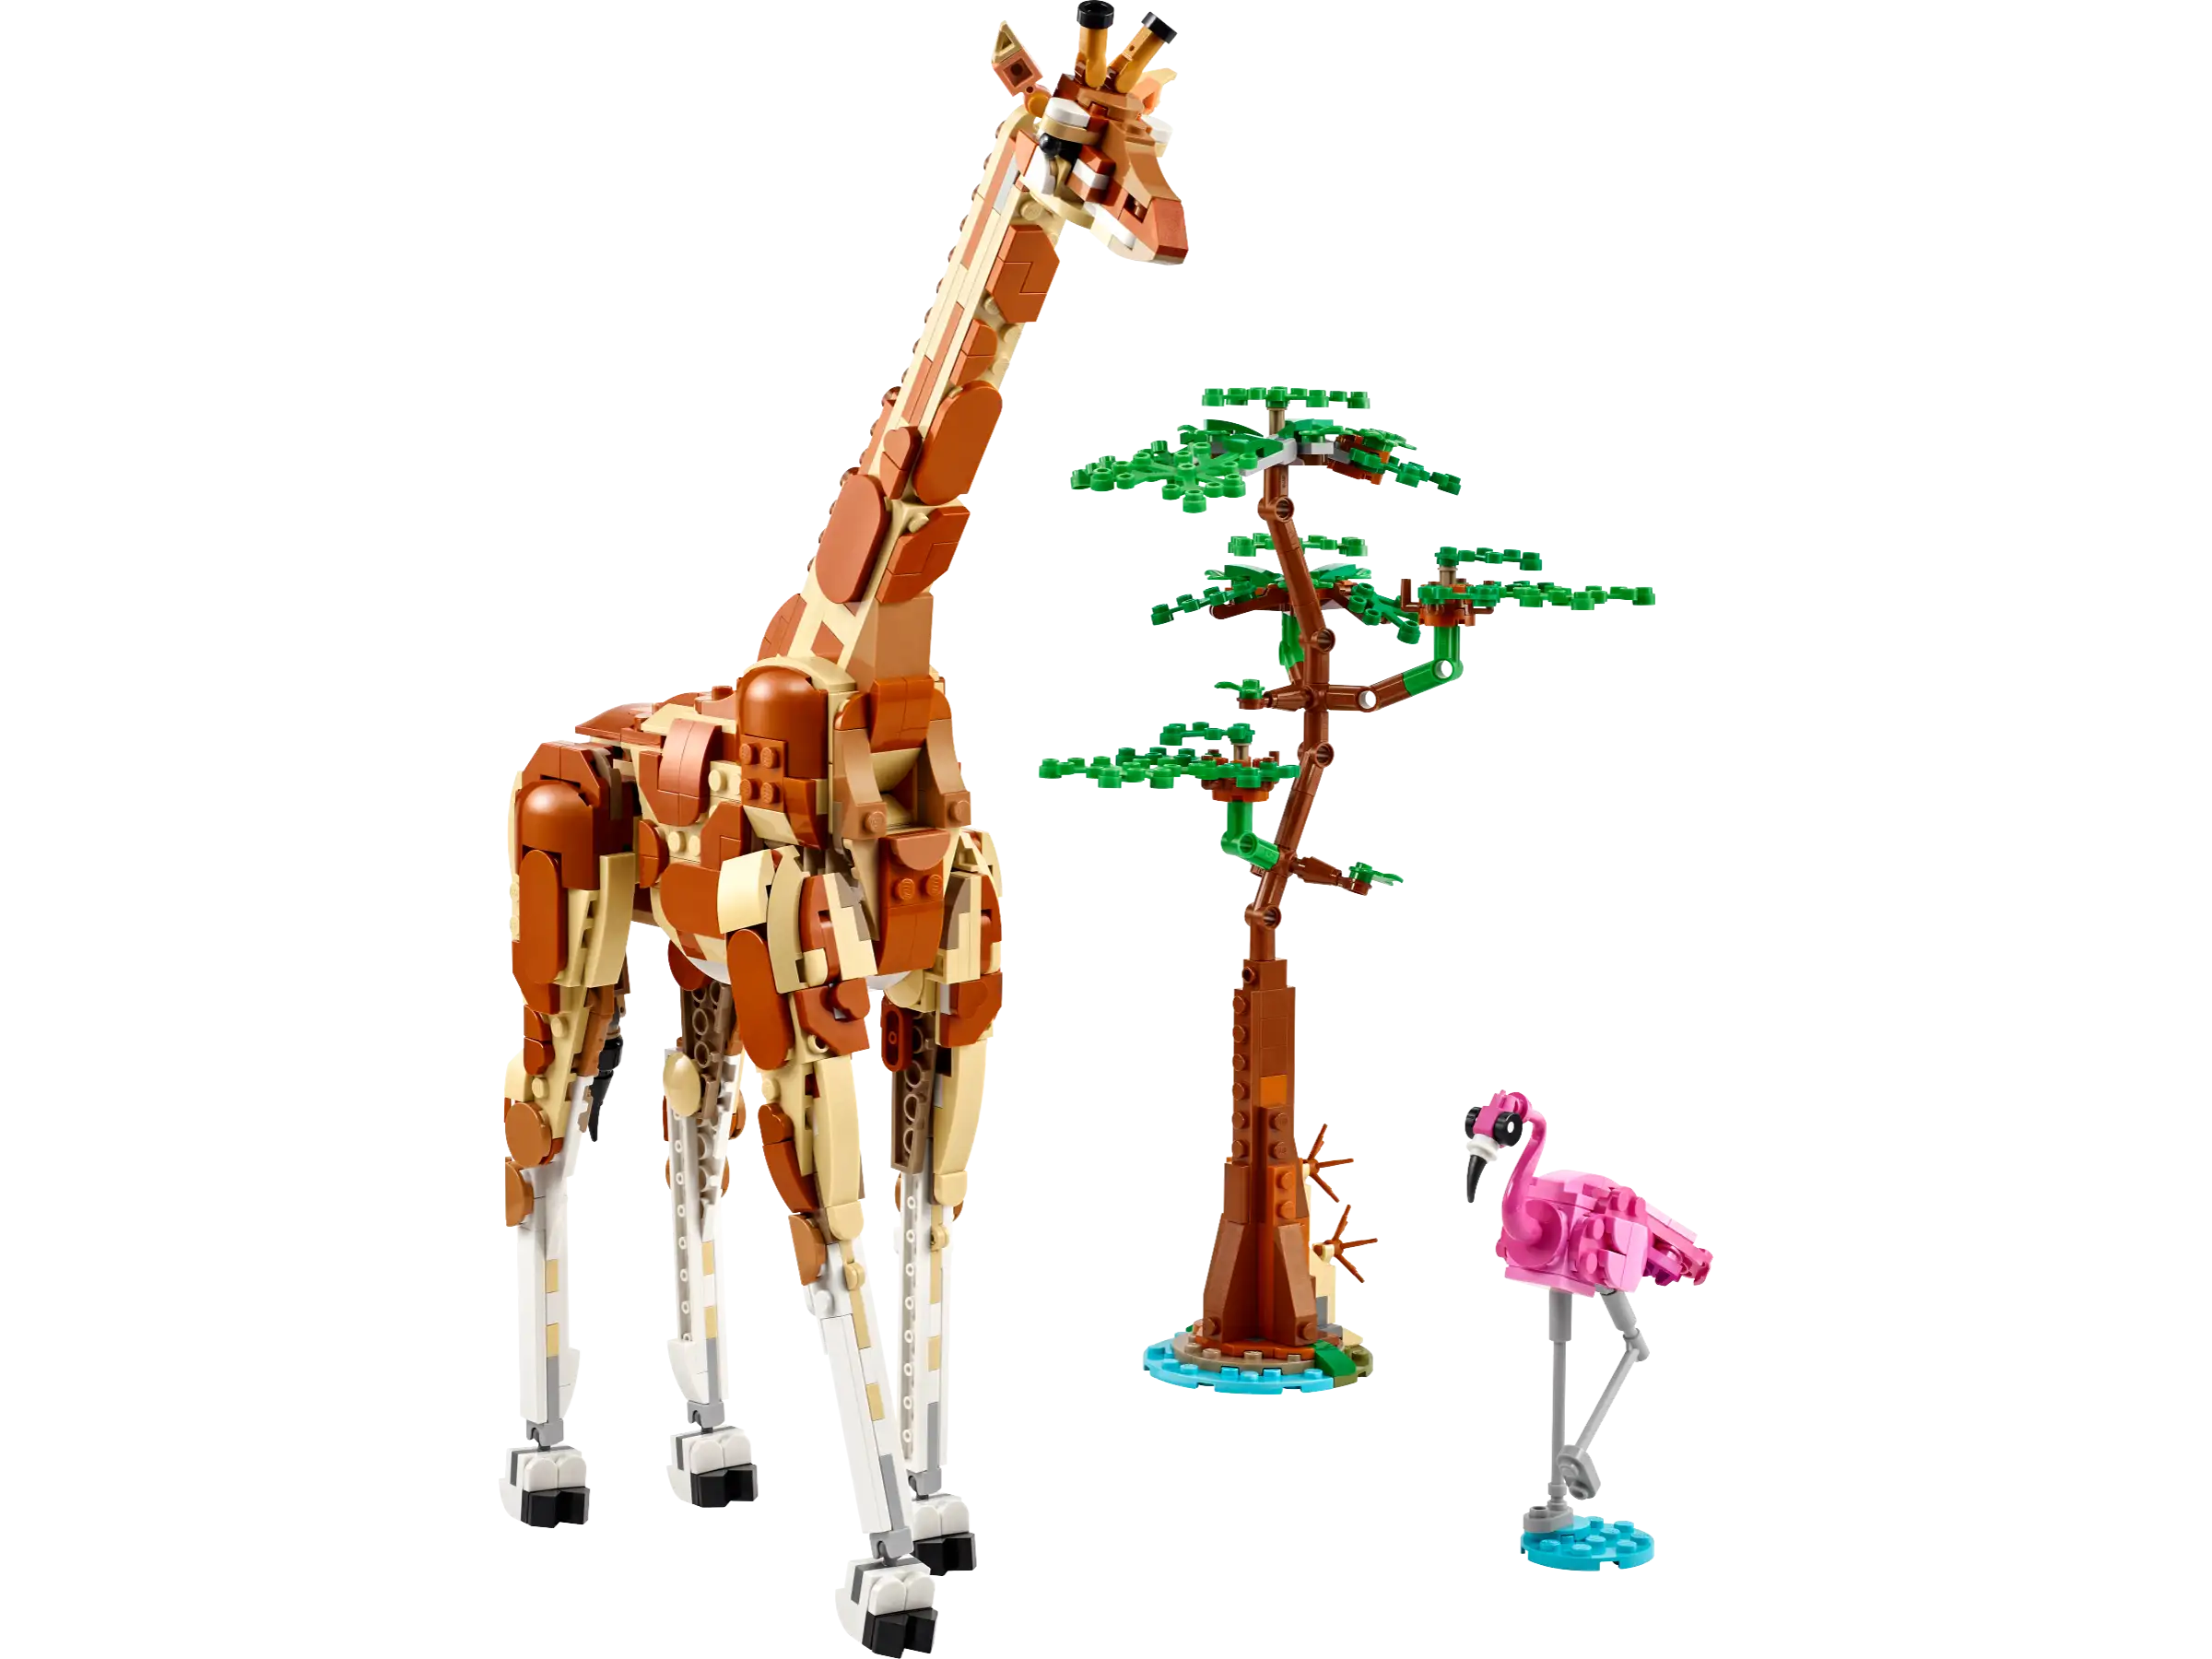 Lego - Wild animals on safari